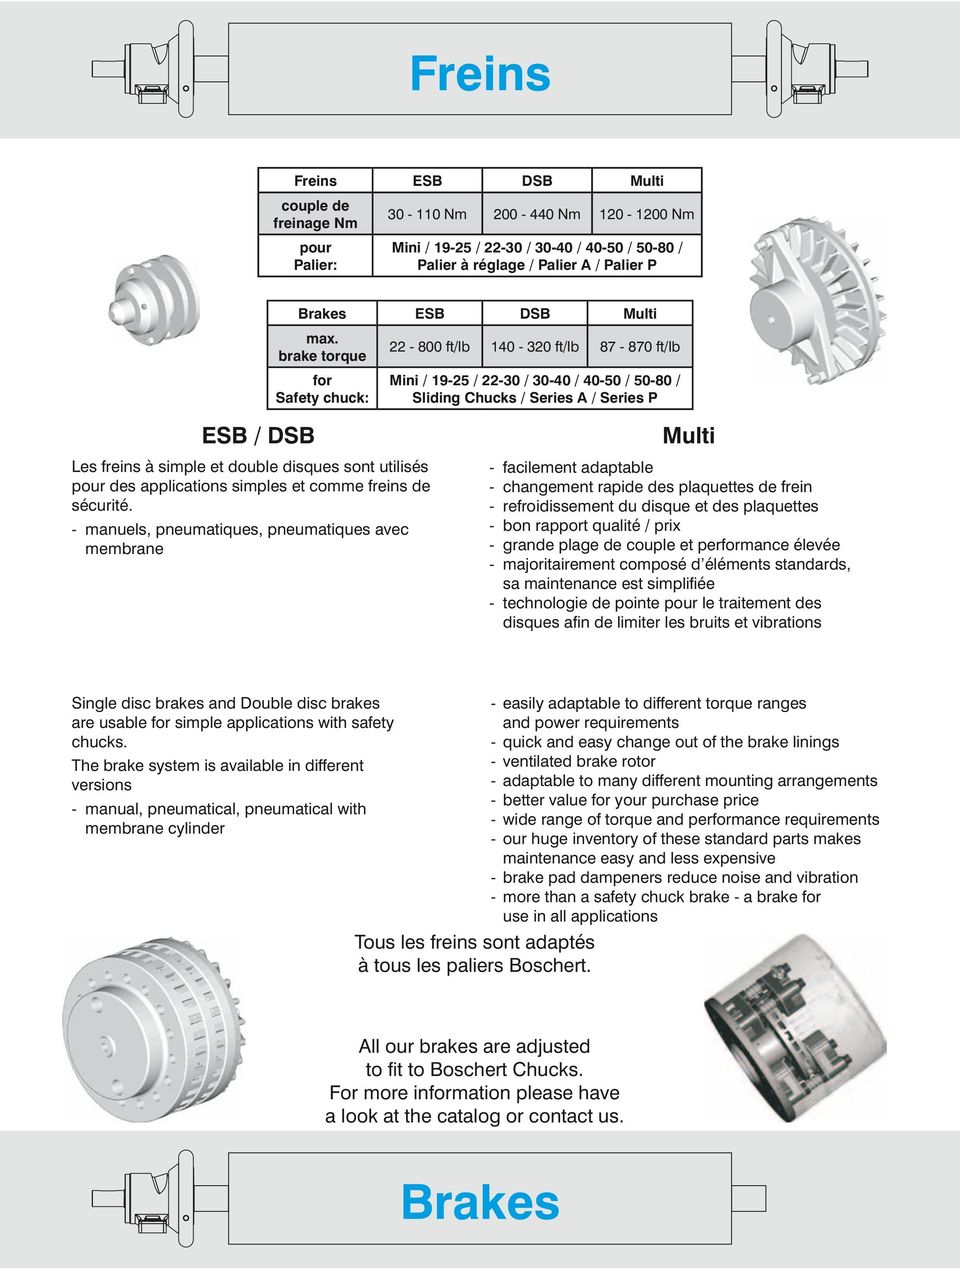 brake torque for Safety chuck: 22-800 ft/lb 140-320 ft/lb 87-870 ft/lb Mini / 19-25 / 22-30 / 30-40 / 40-50 / 50-80 / Sliding Chucks / Series A / Series P ESB / DSB Les freins à simple et double